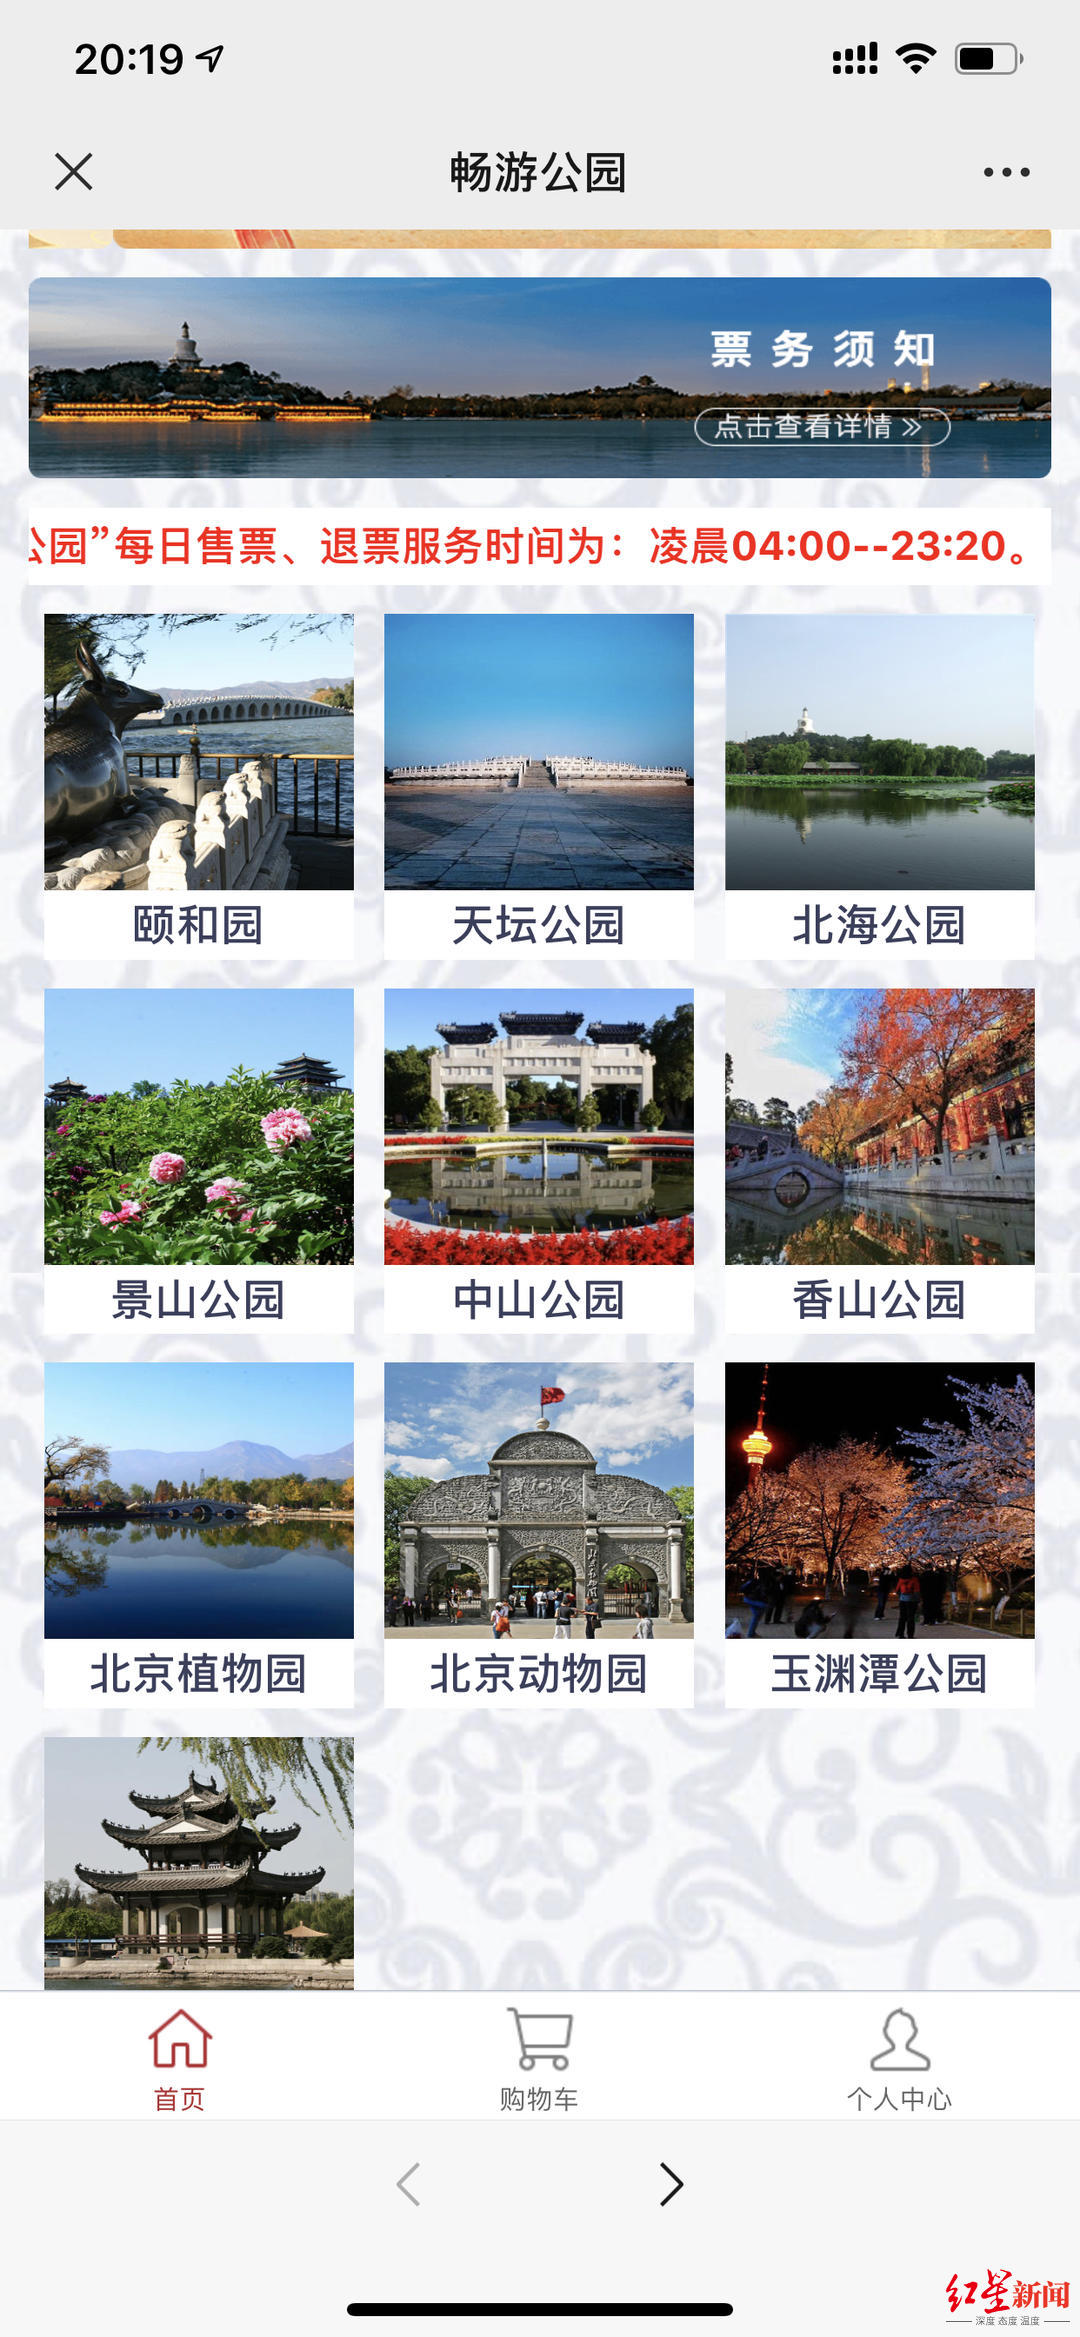 ▲前往北京一些公园需要通过“畅游公园”提前预约购票